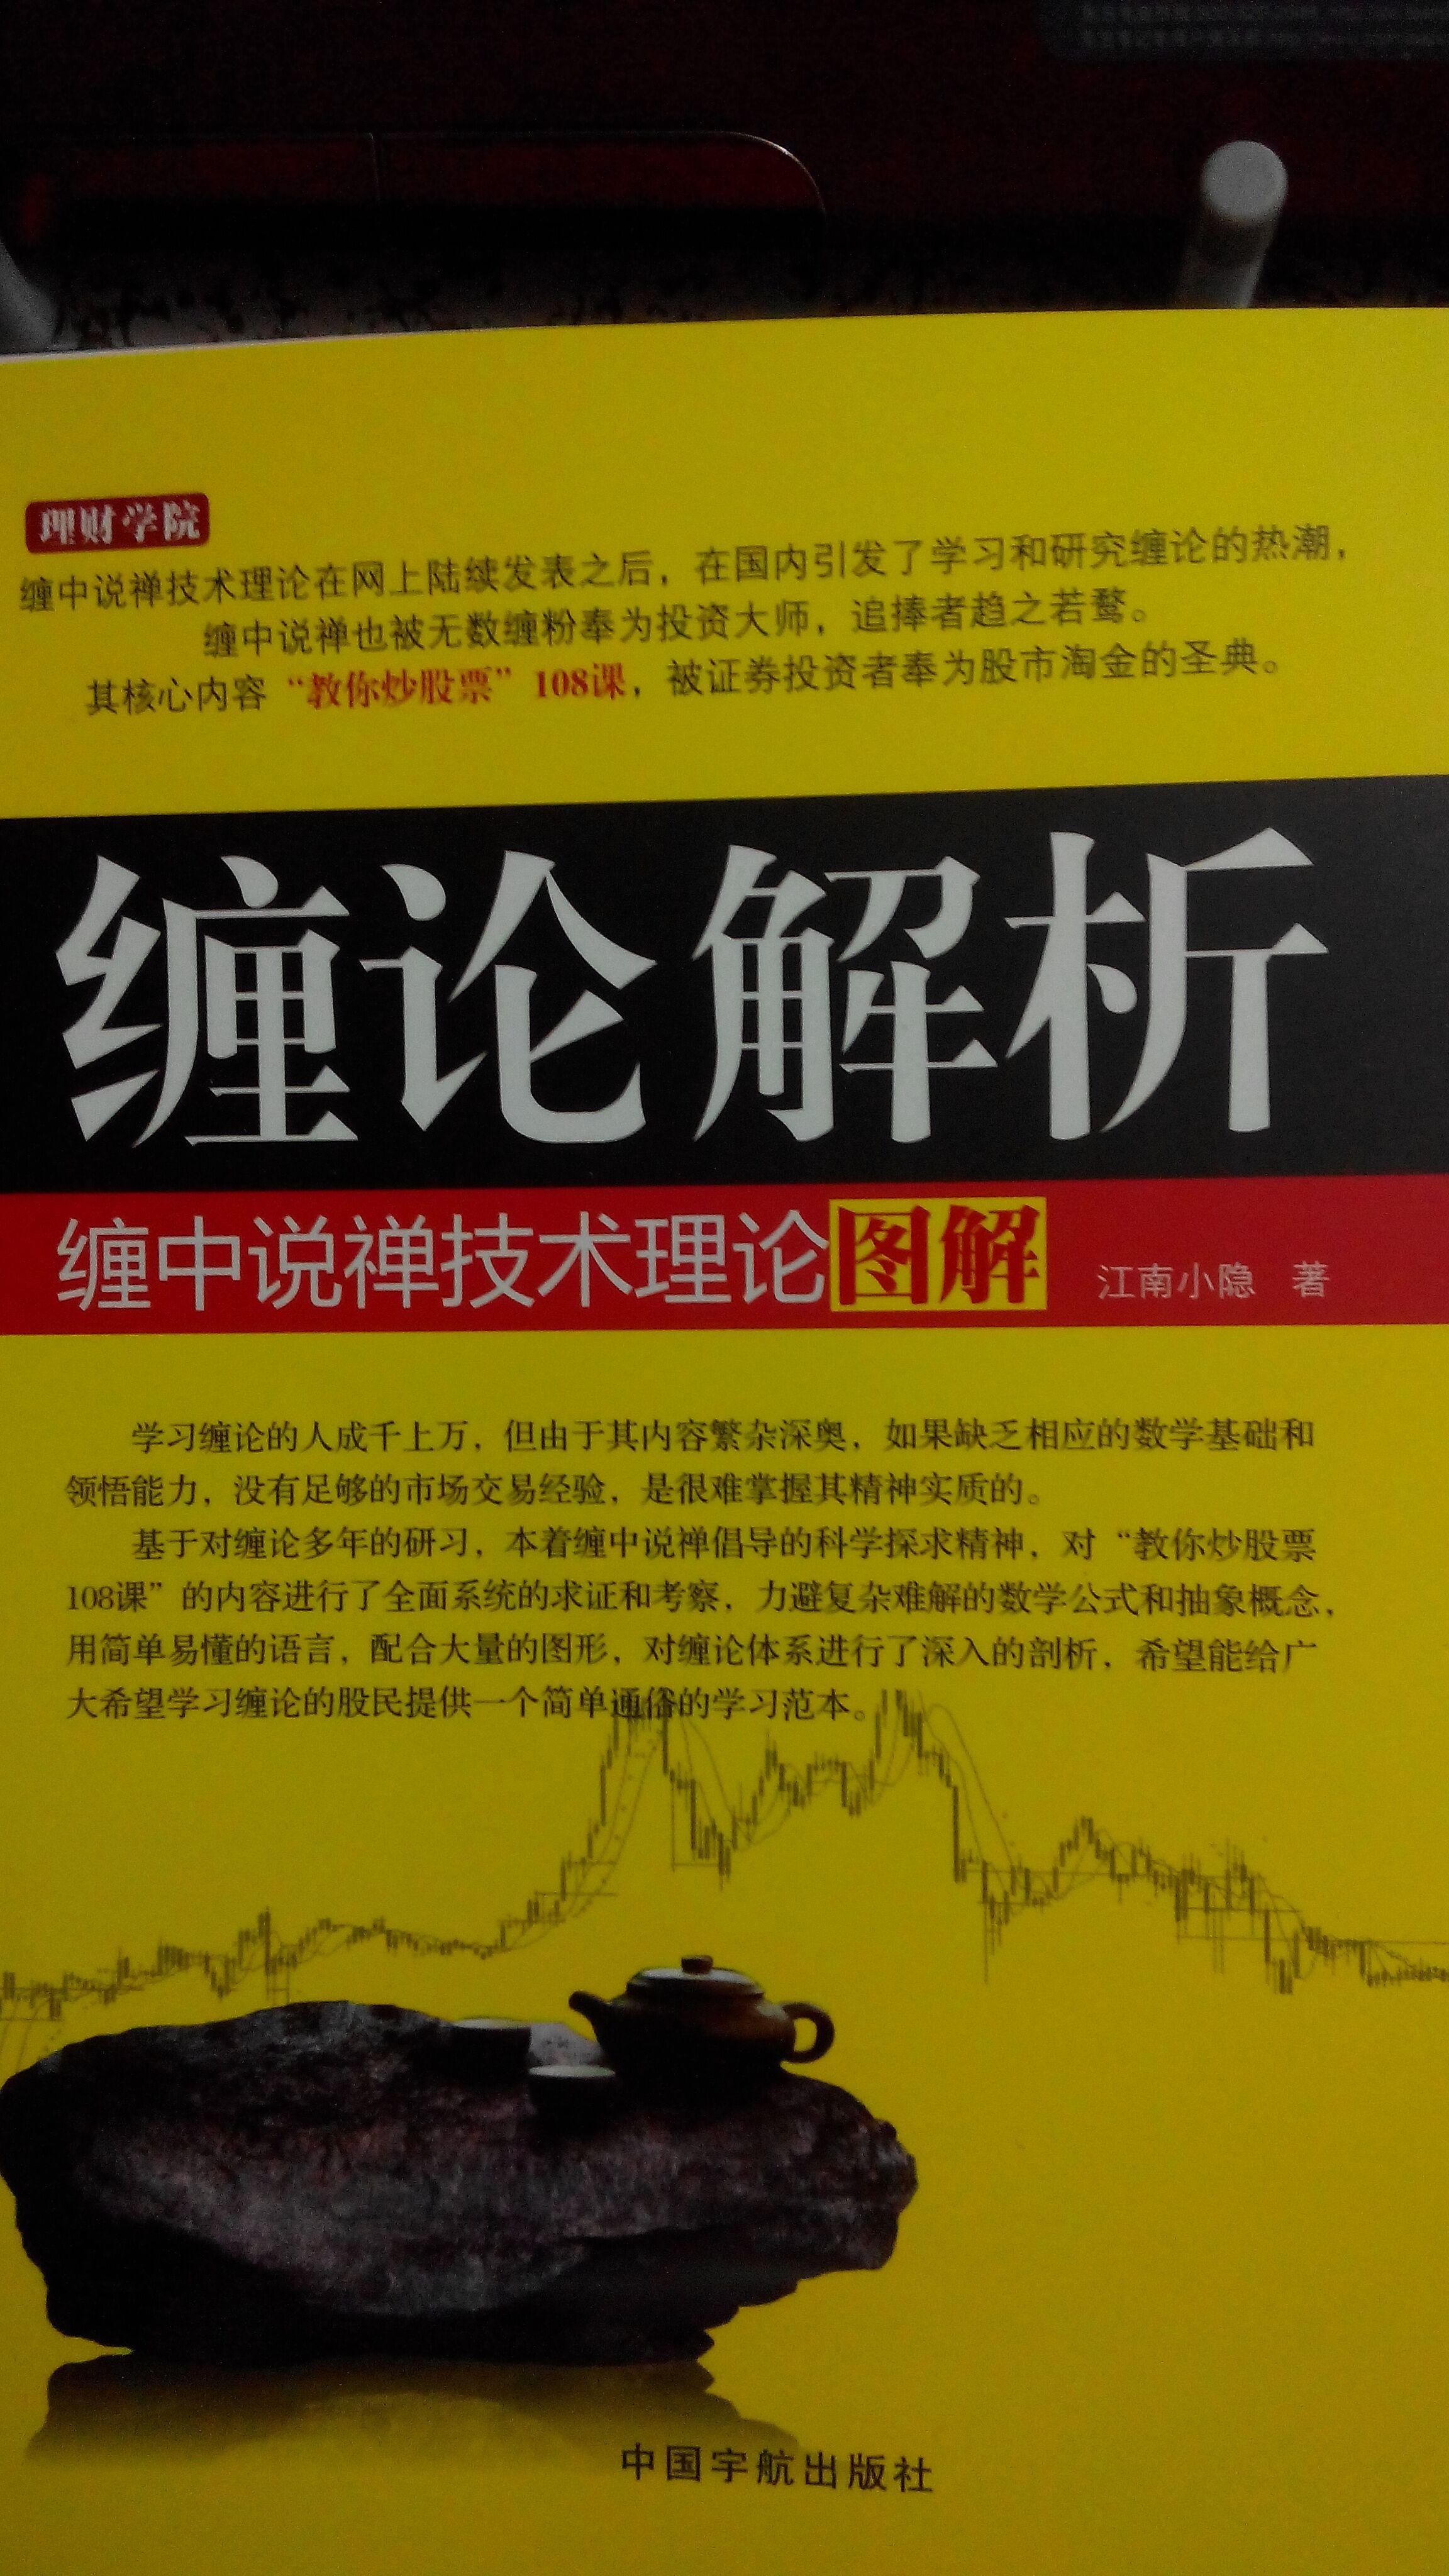 脑子,那就是江恩的理论总结《江恩股票市场教程》这本书的主要看点是